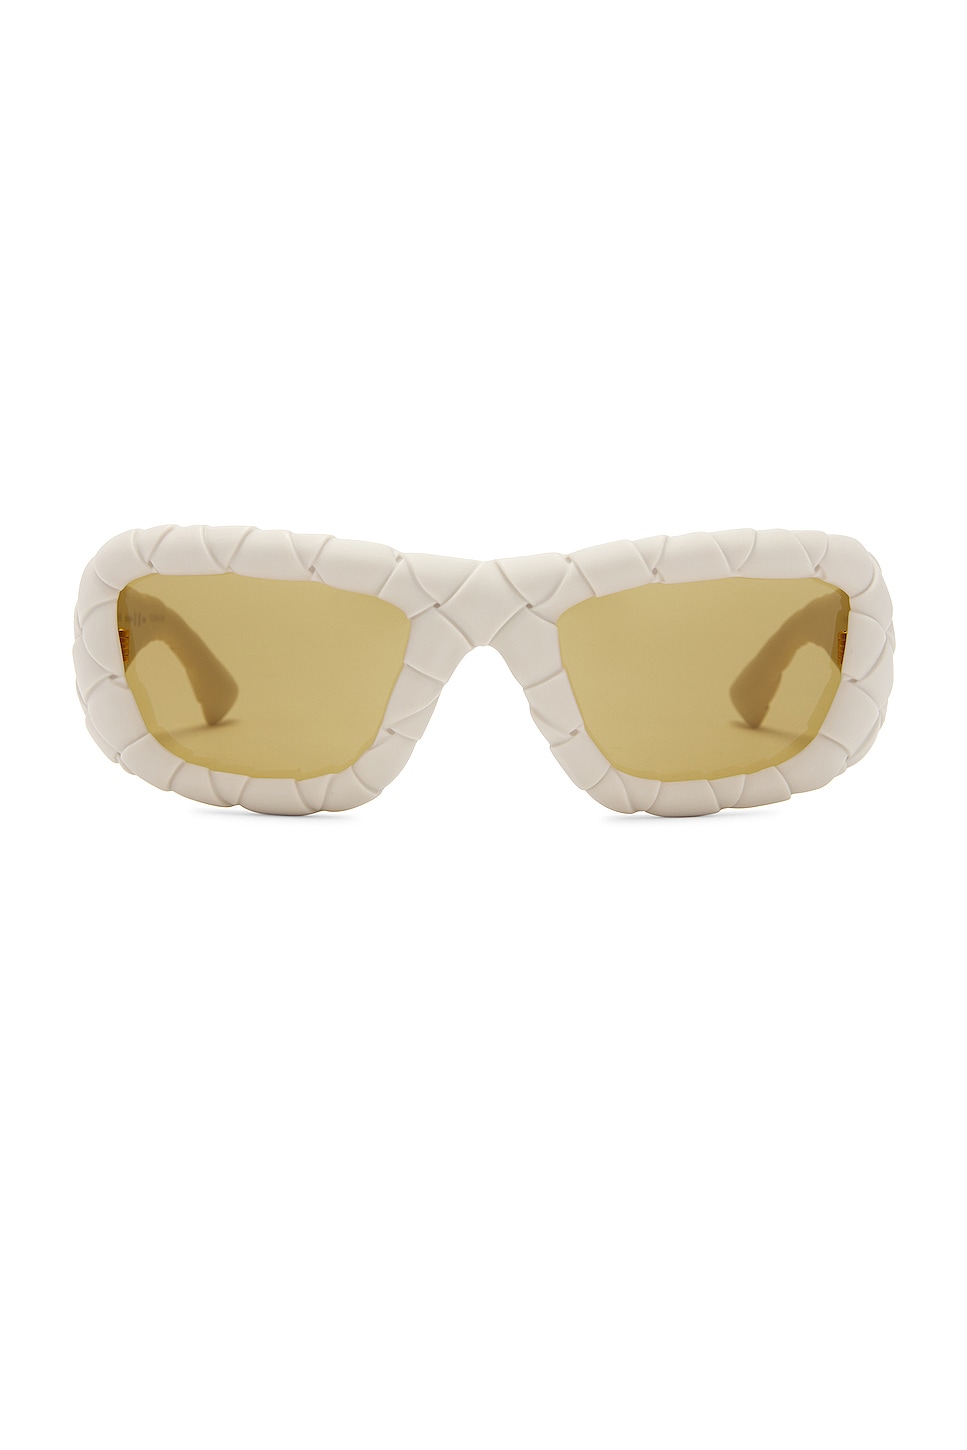 Intrecciato Sunglasses in White